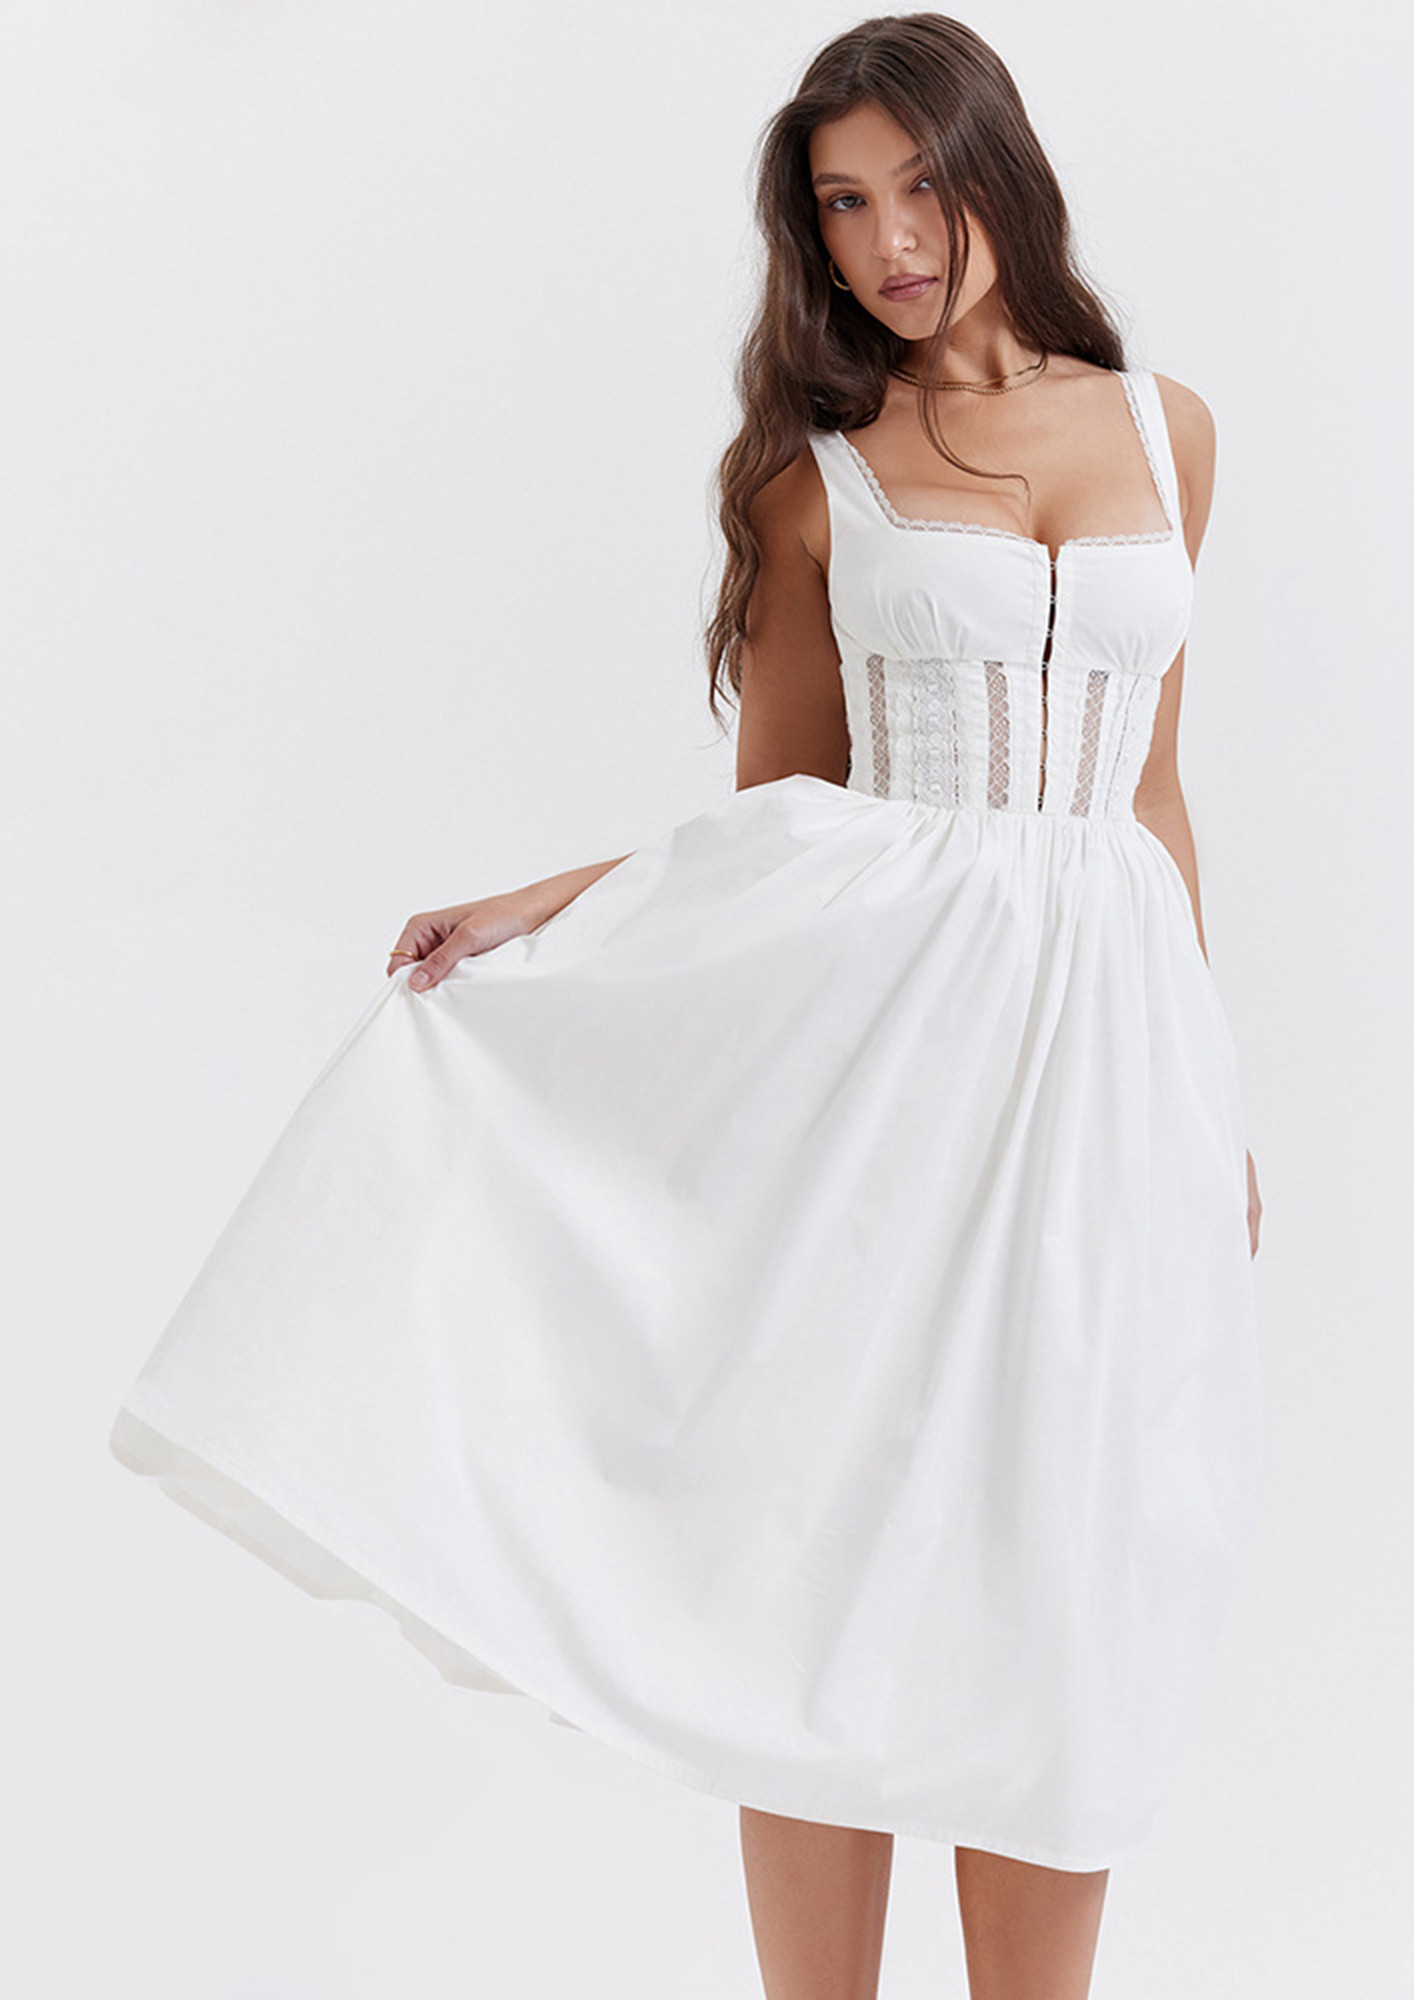 Under Dress Corset White China Trade,Buy China Direct From Under Dress  Corset White Factories at